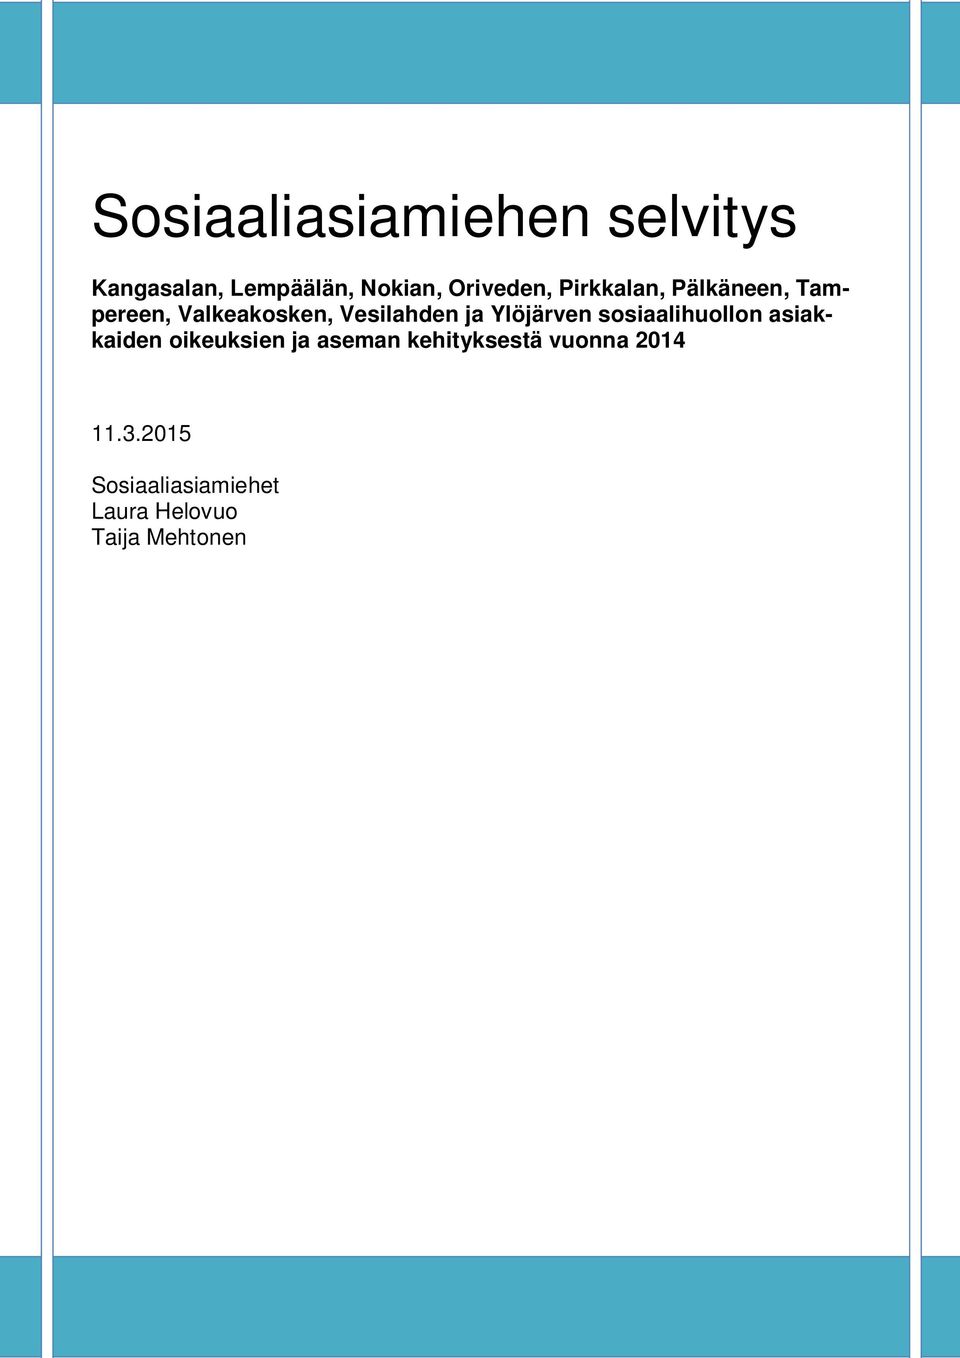 ja Ylöjärven sosiaalihuollon asiakkaiden oikeuksien ja aseman